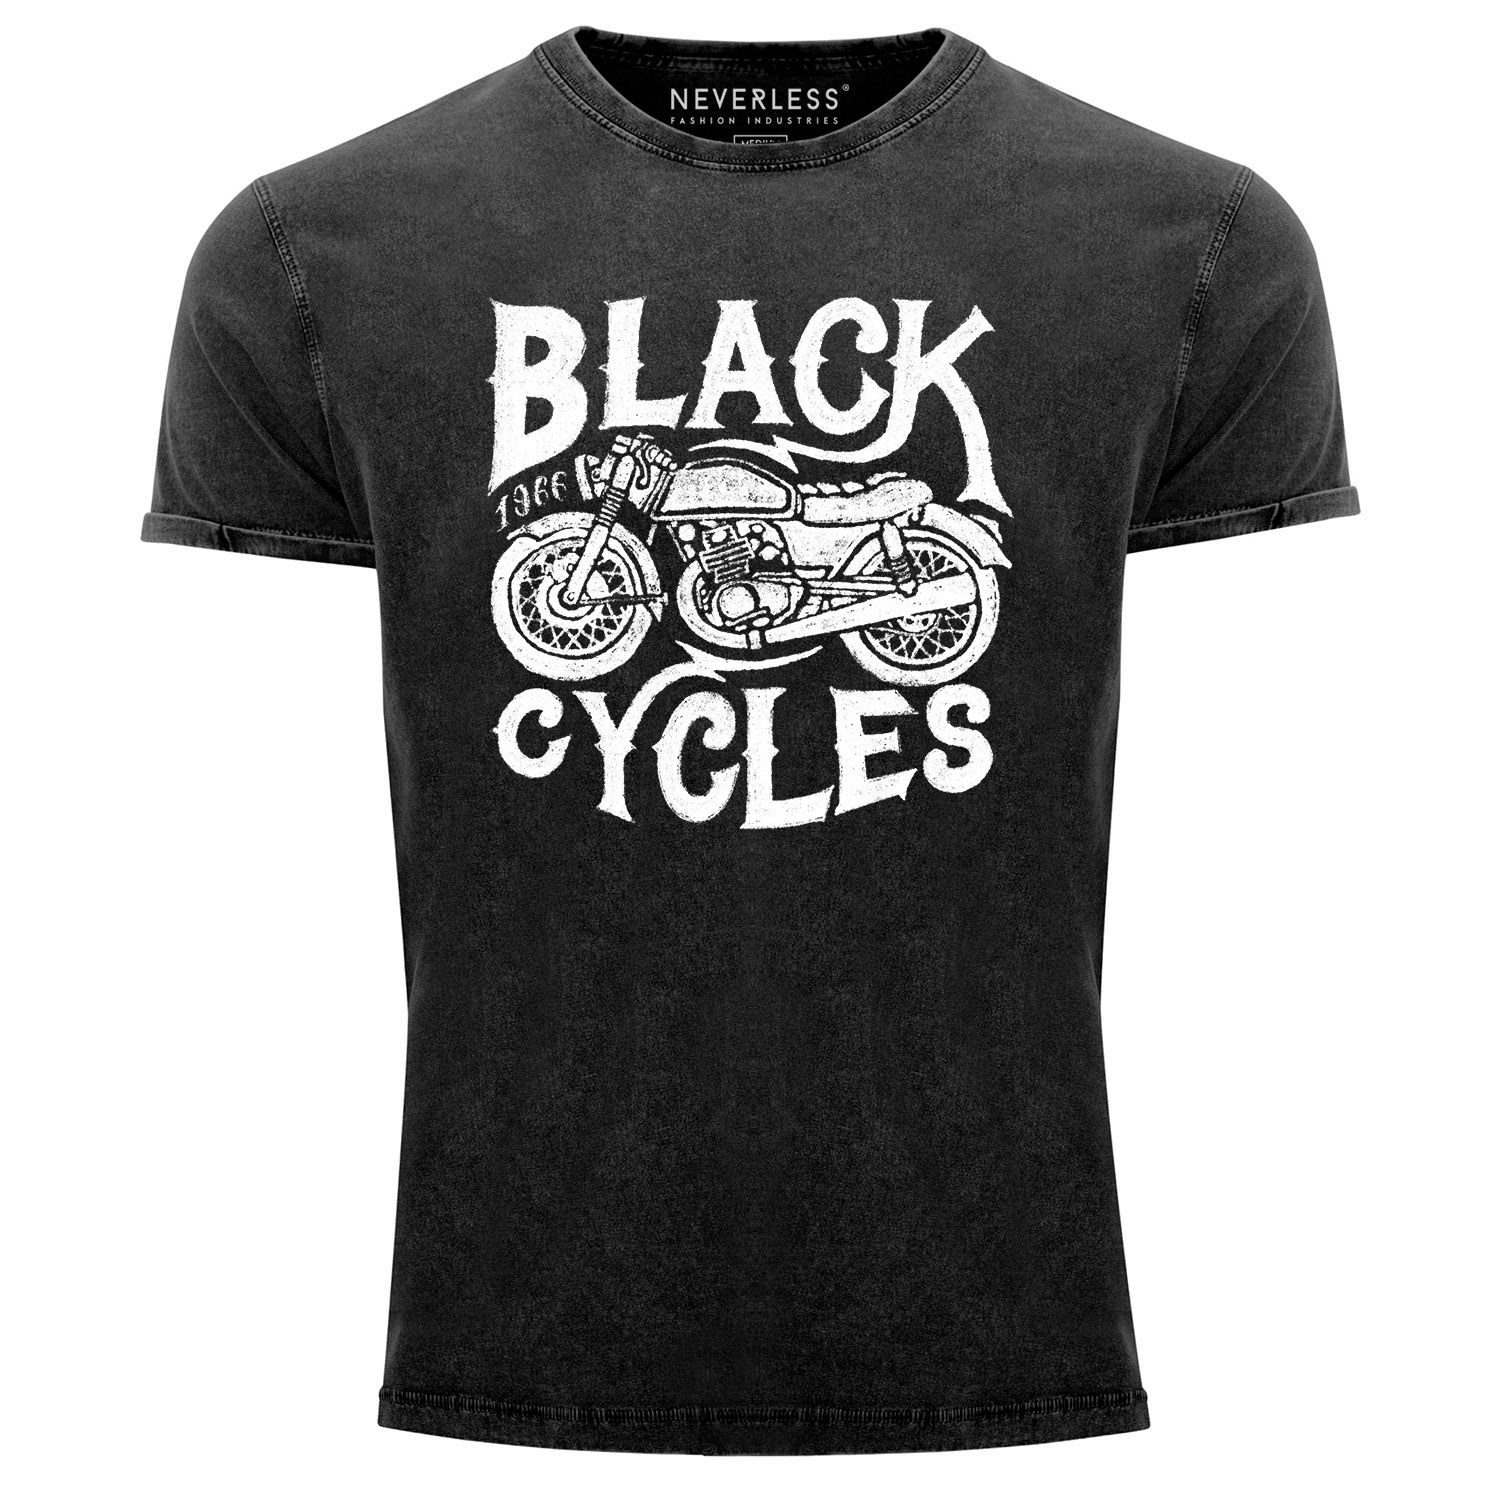 Neverless Print-Shirt Herren T-Shirt Vintage Washed Motorrad Biker Retro Slim Fit Neverless® mit Print schwarz